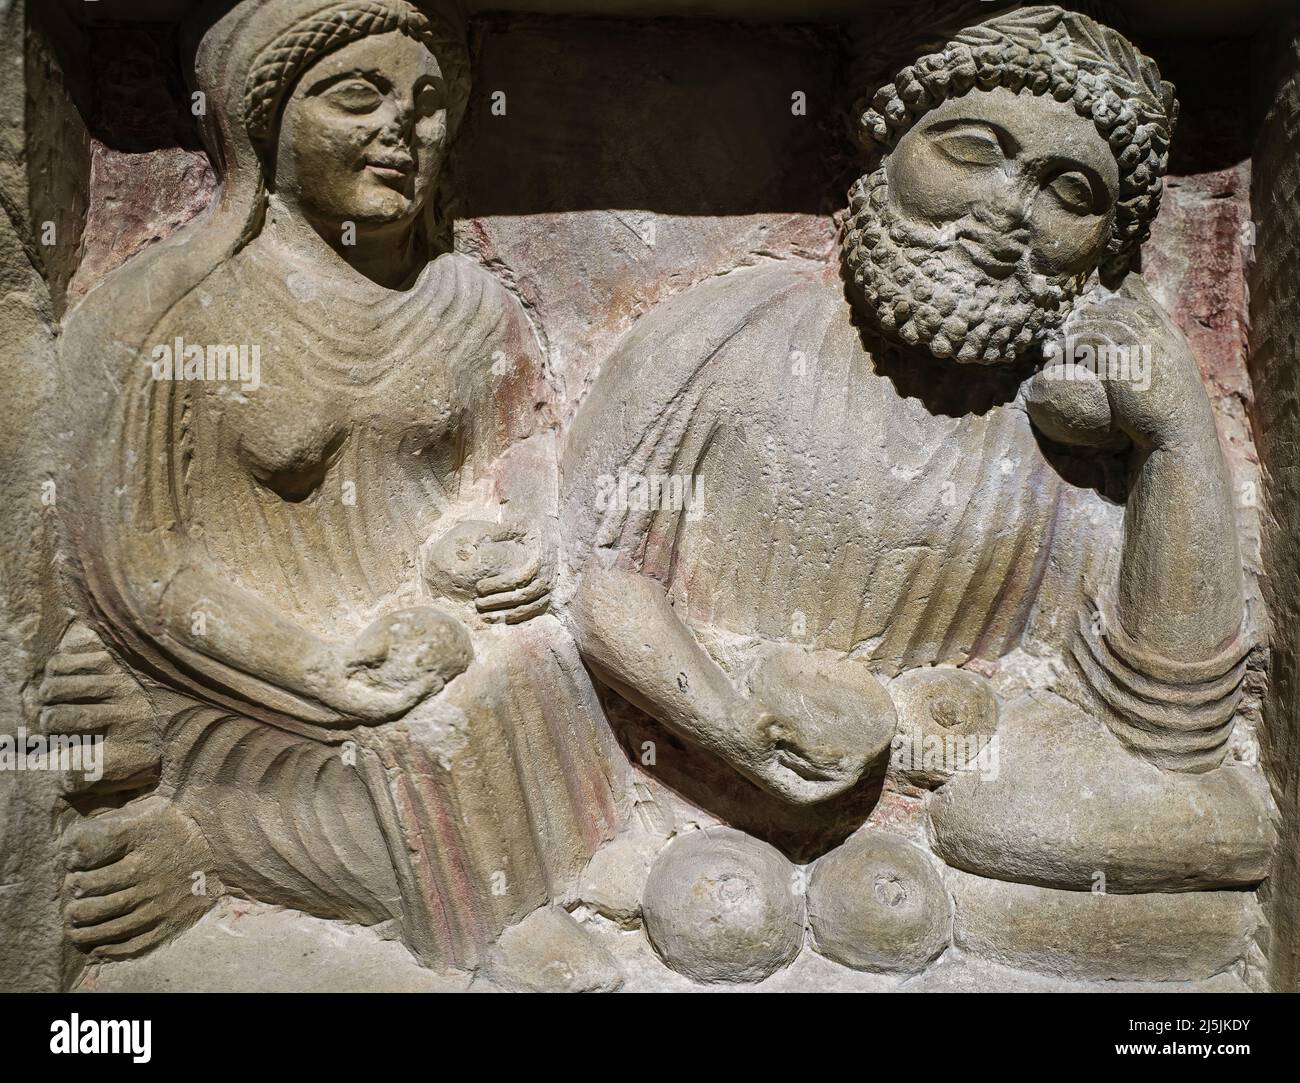 Eine alte Szene aus dem Leben des alten Zypern. Eine Frau und ein Mann essen die Früchte. Cipro-Attic 500 B.C. Foto in hoher Qualität Stockfoto